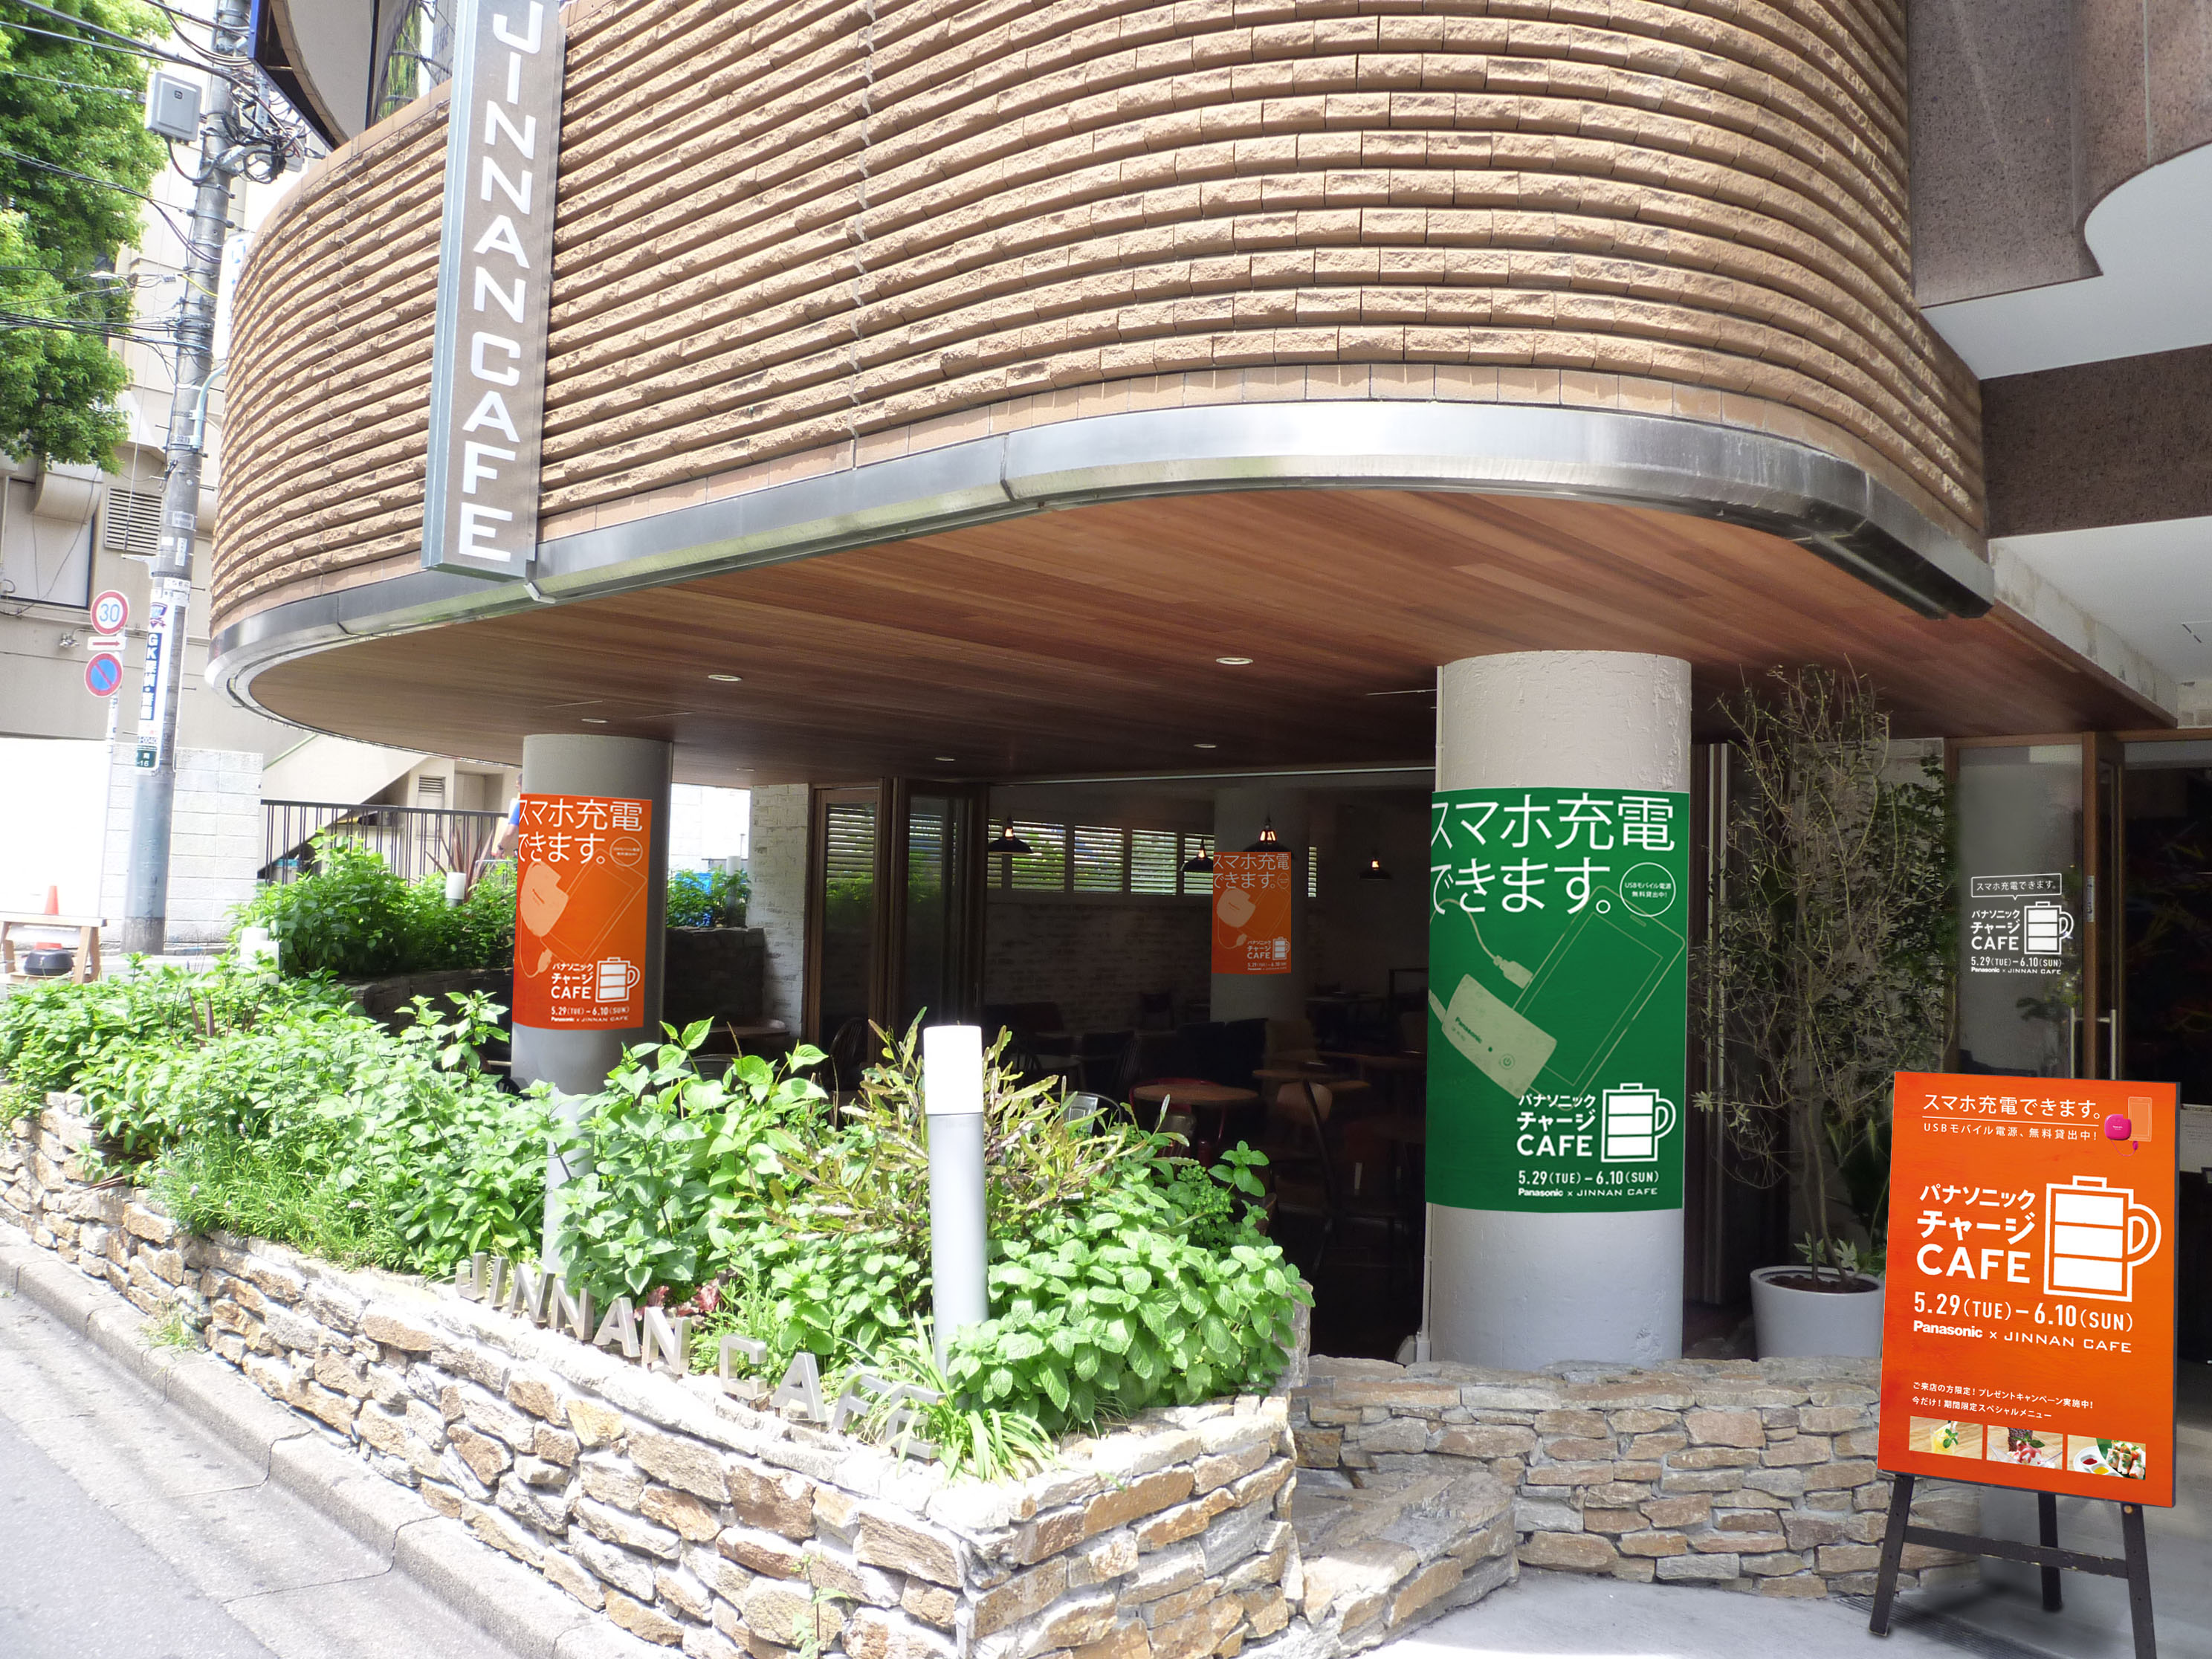 渋谷「JINNAN CAFE」とタイアップし、『パナソニック チャージ CAFE』をオープン！